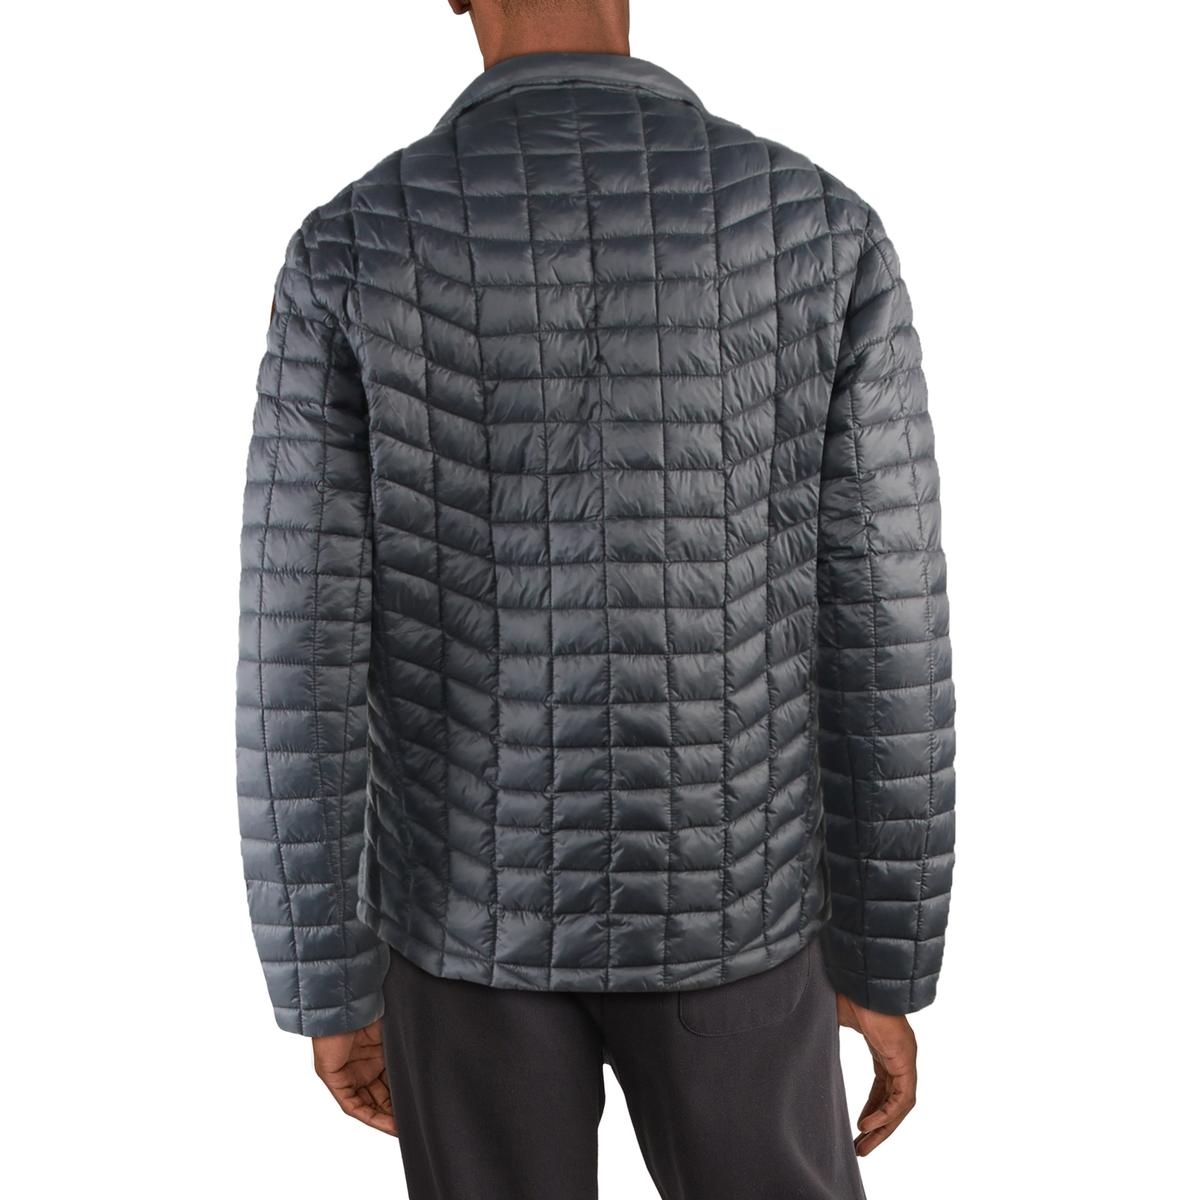 Reebok Men's Quilted Hoodless Warm Winter Packable Puffer Jacket | eBay